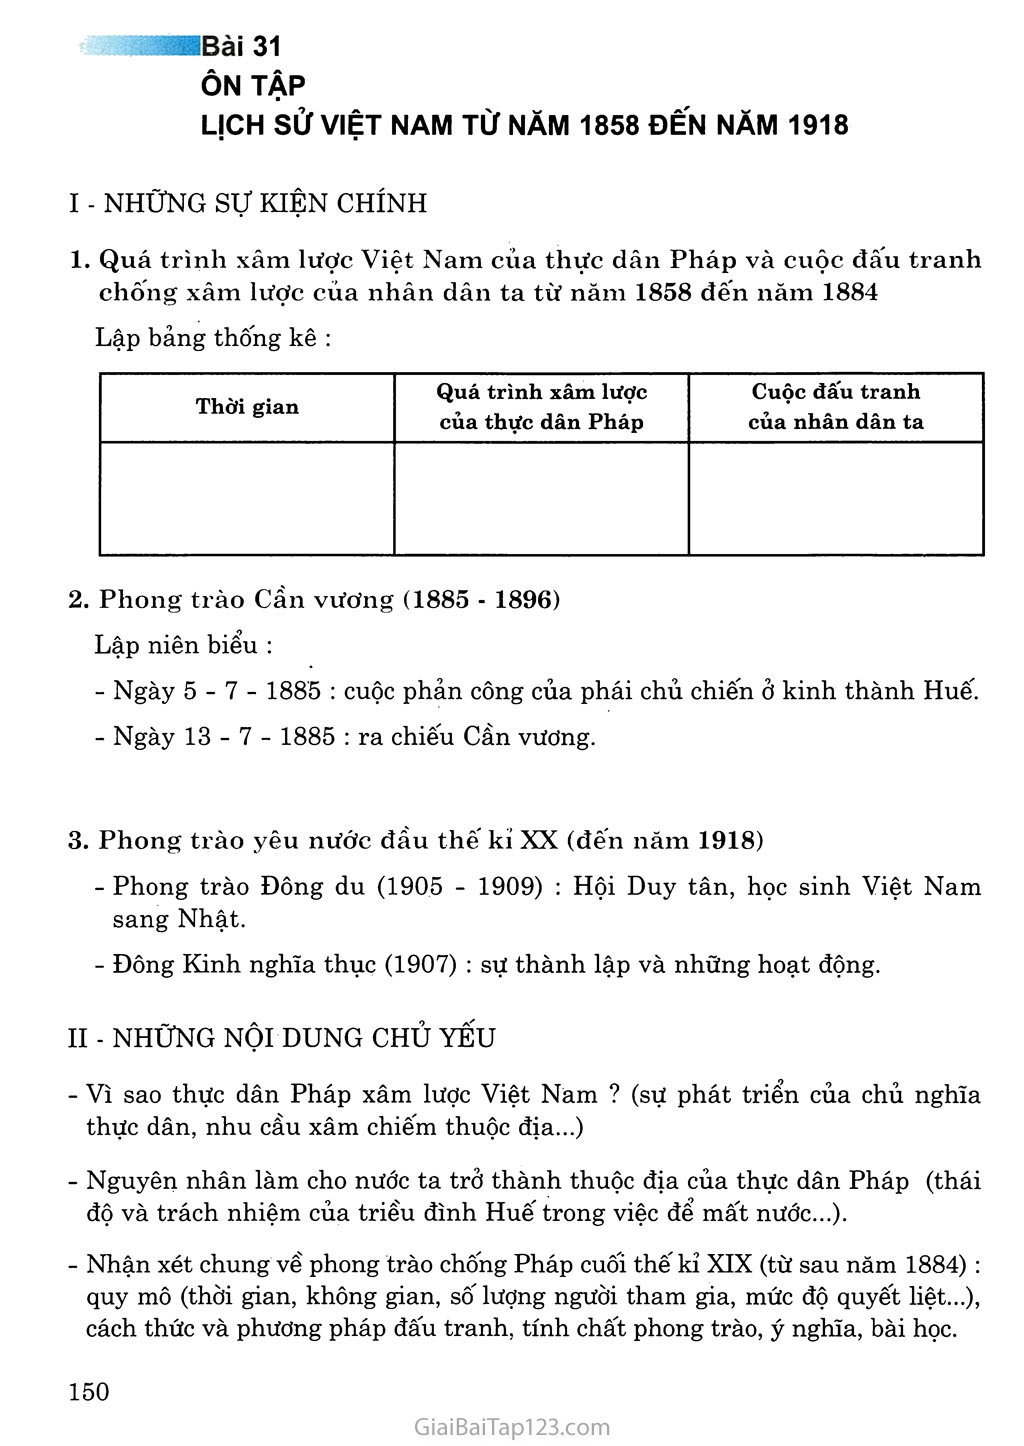 Bài 31: Ôn tập lịch sử Việt Nam từ năm 1858 đến năm 1918 trang 1